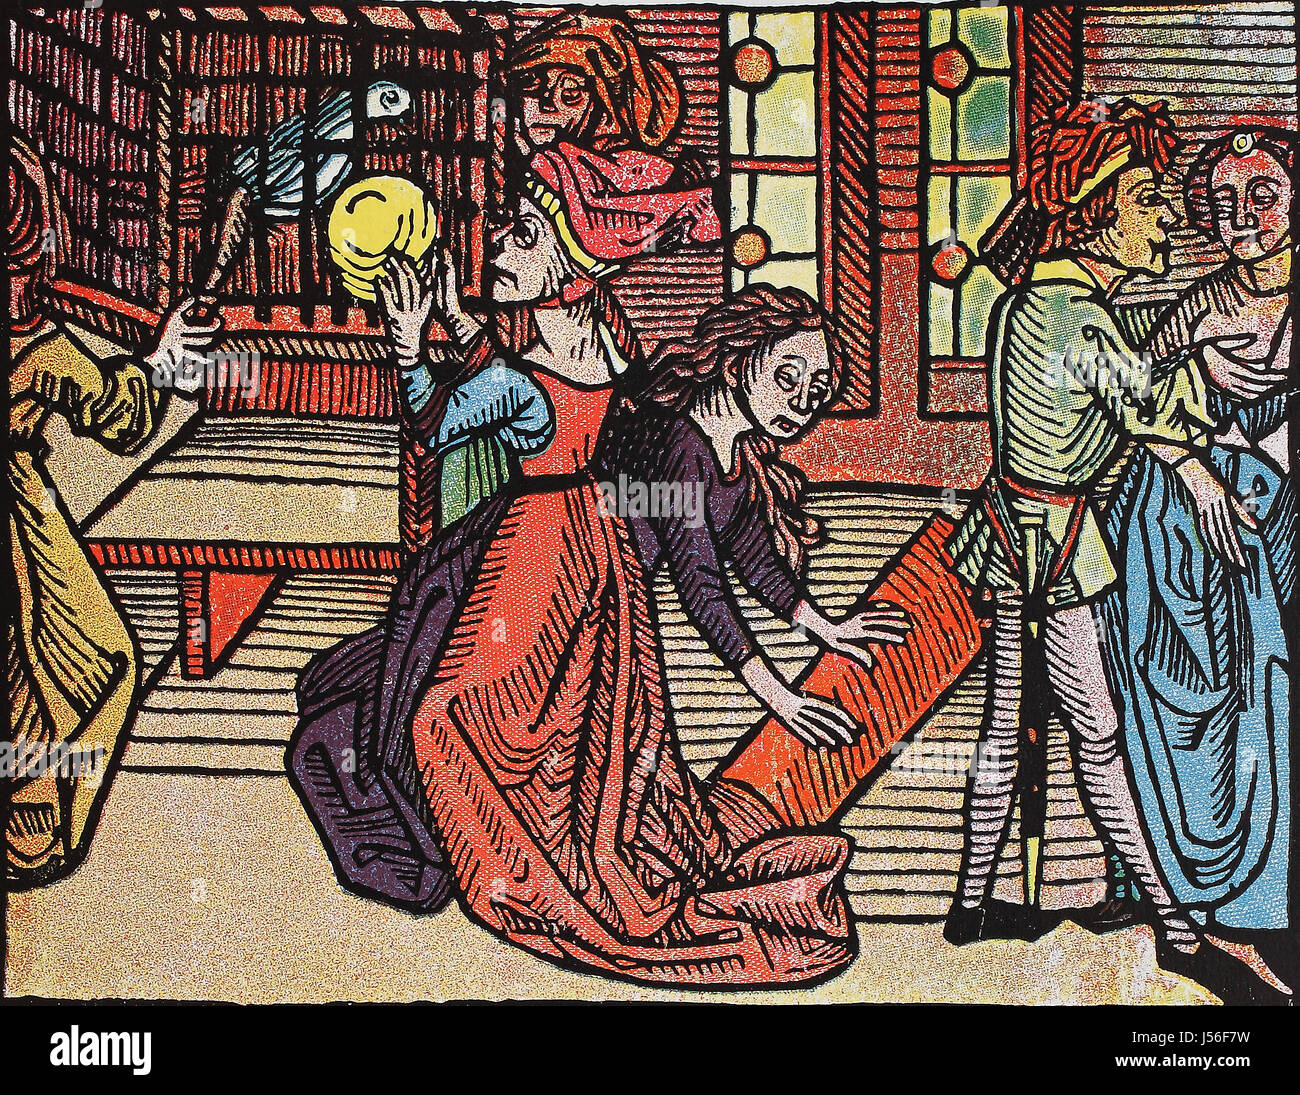 Das Buch der Weisheit, Illustration aus einem Schwankbuch des 16. Jahrhundert Stock Photo